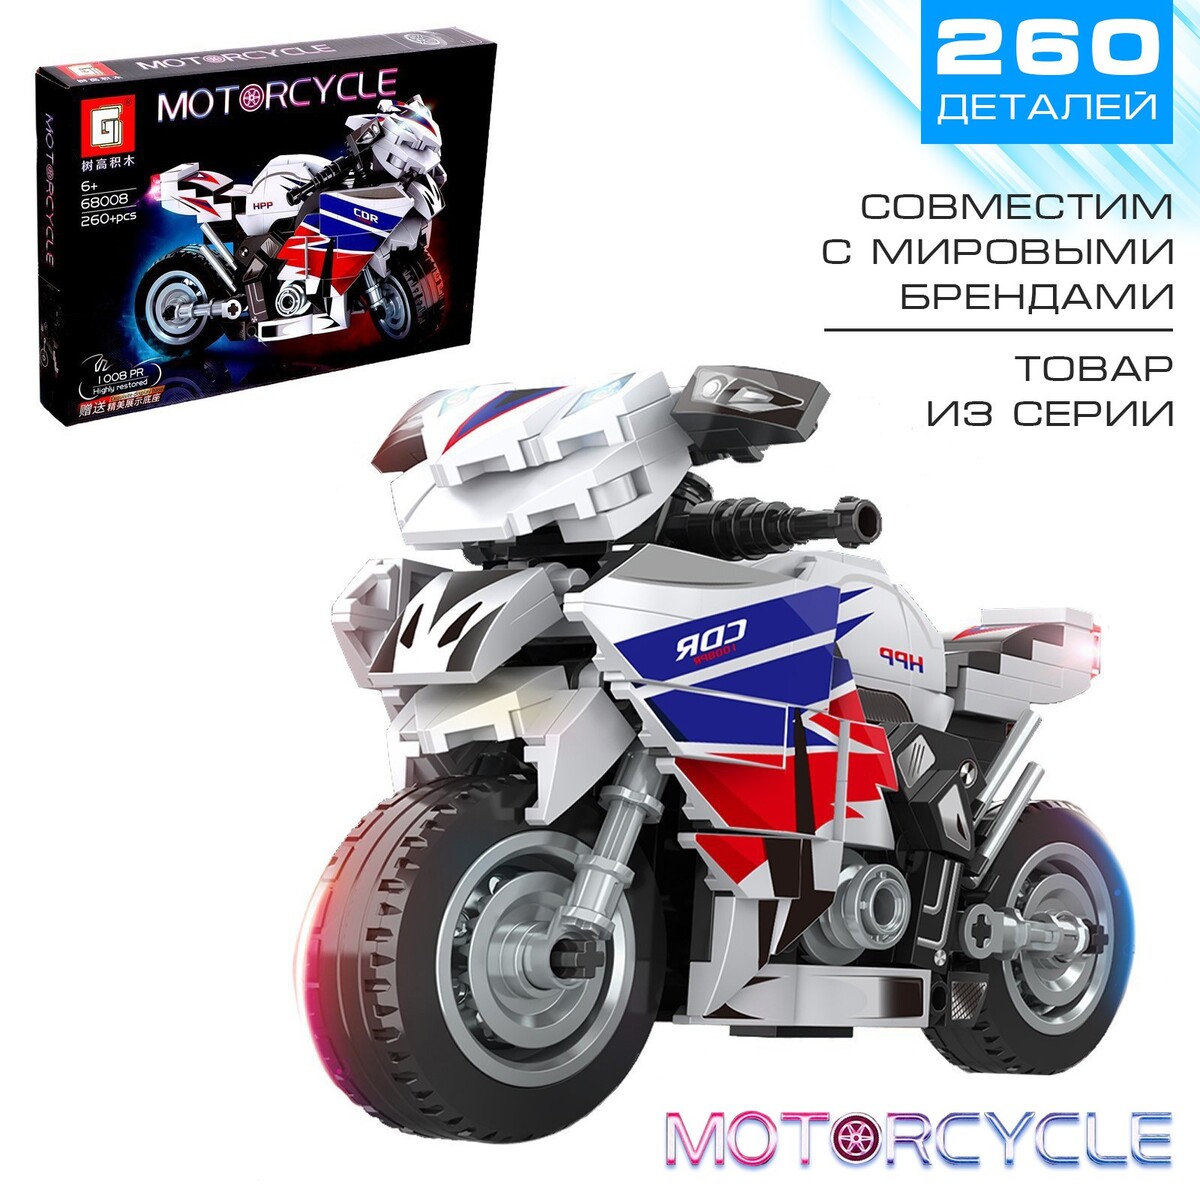 Конструктор мотоцикл motorcycle, 260 деталей 6+ мотоцикл спортивный ktm siku